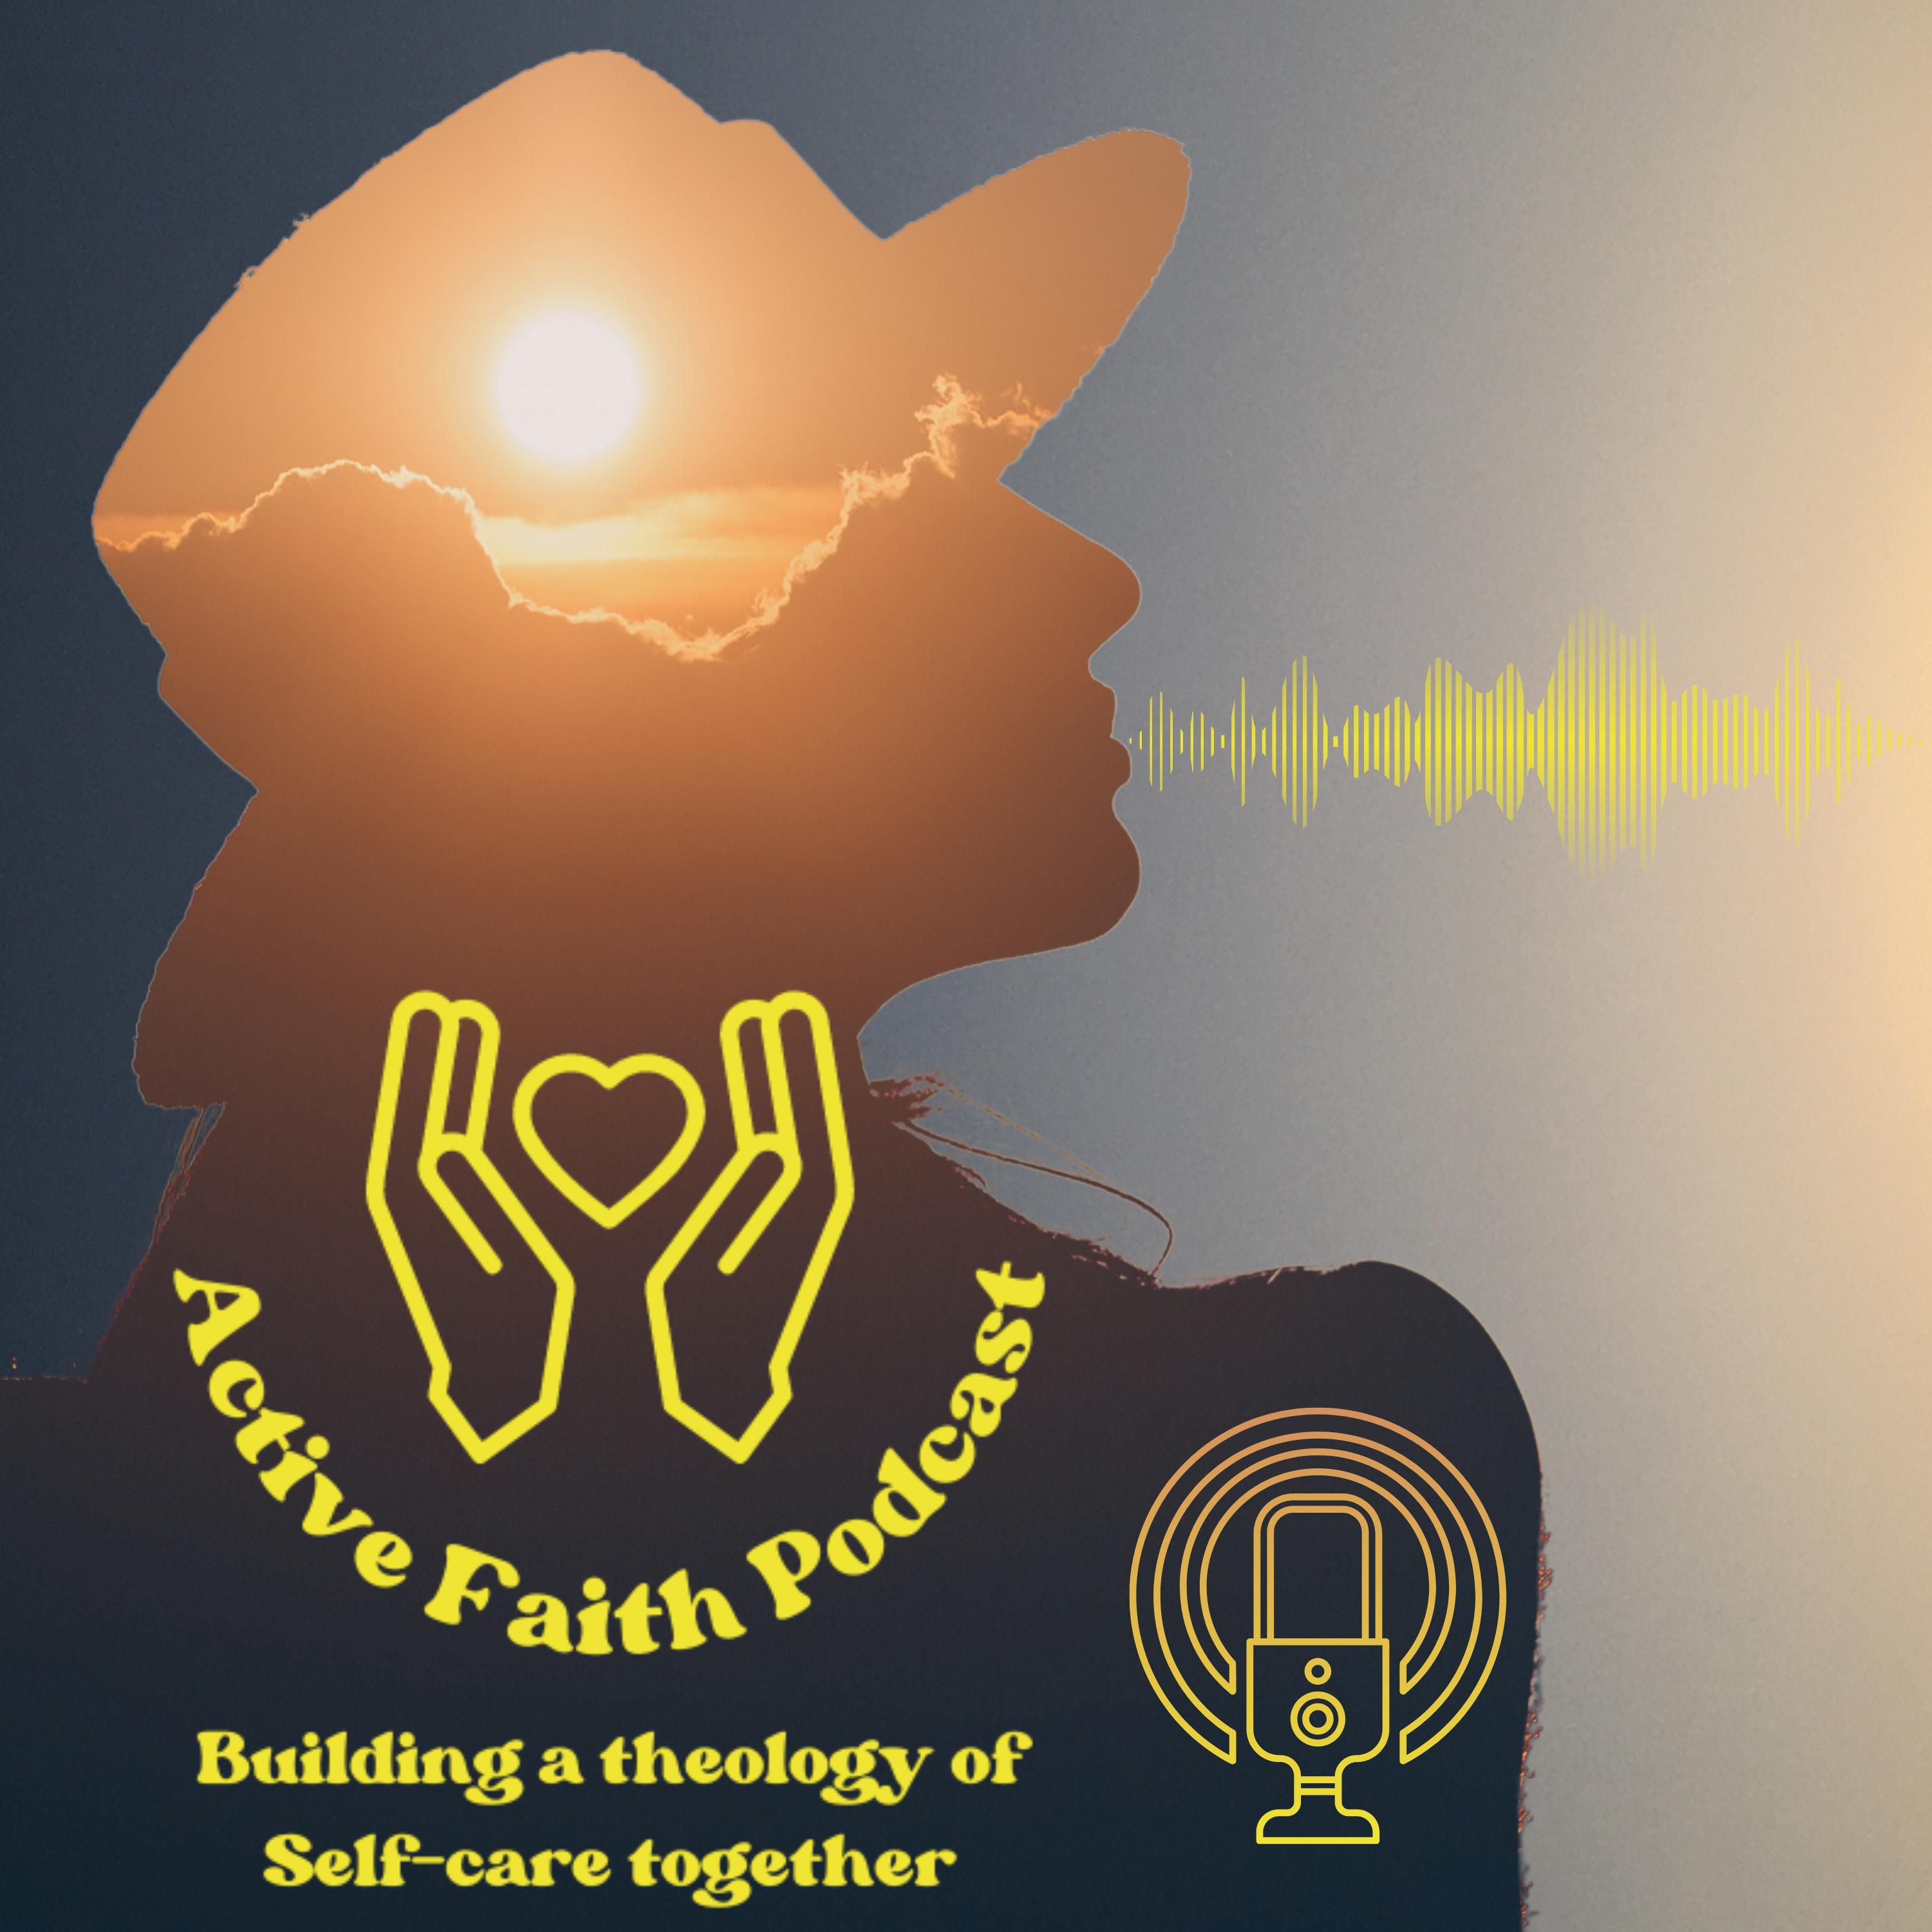 Artwork for podcast Active Faith Podcast